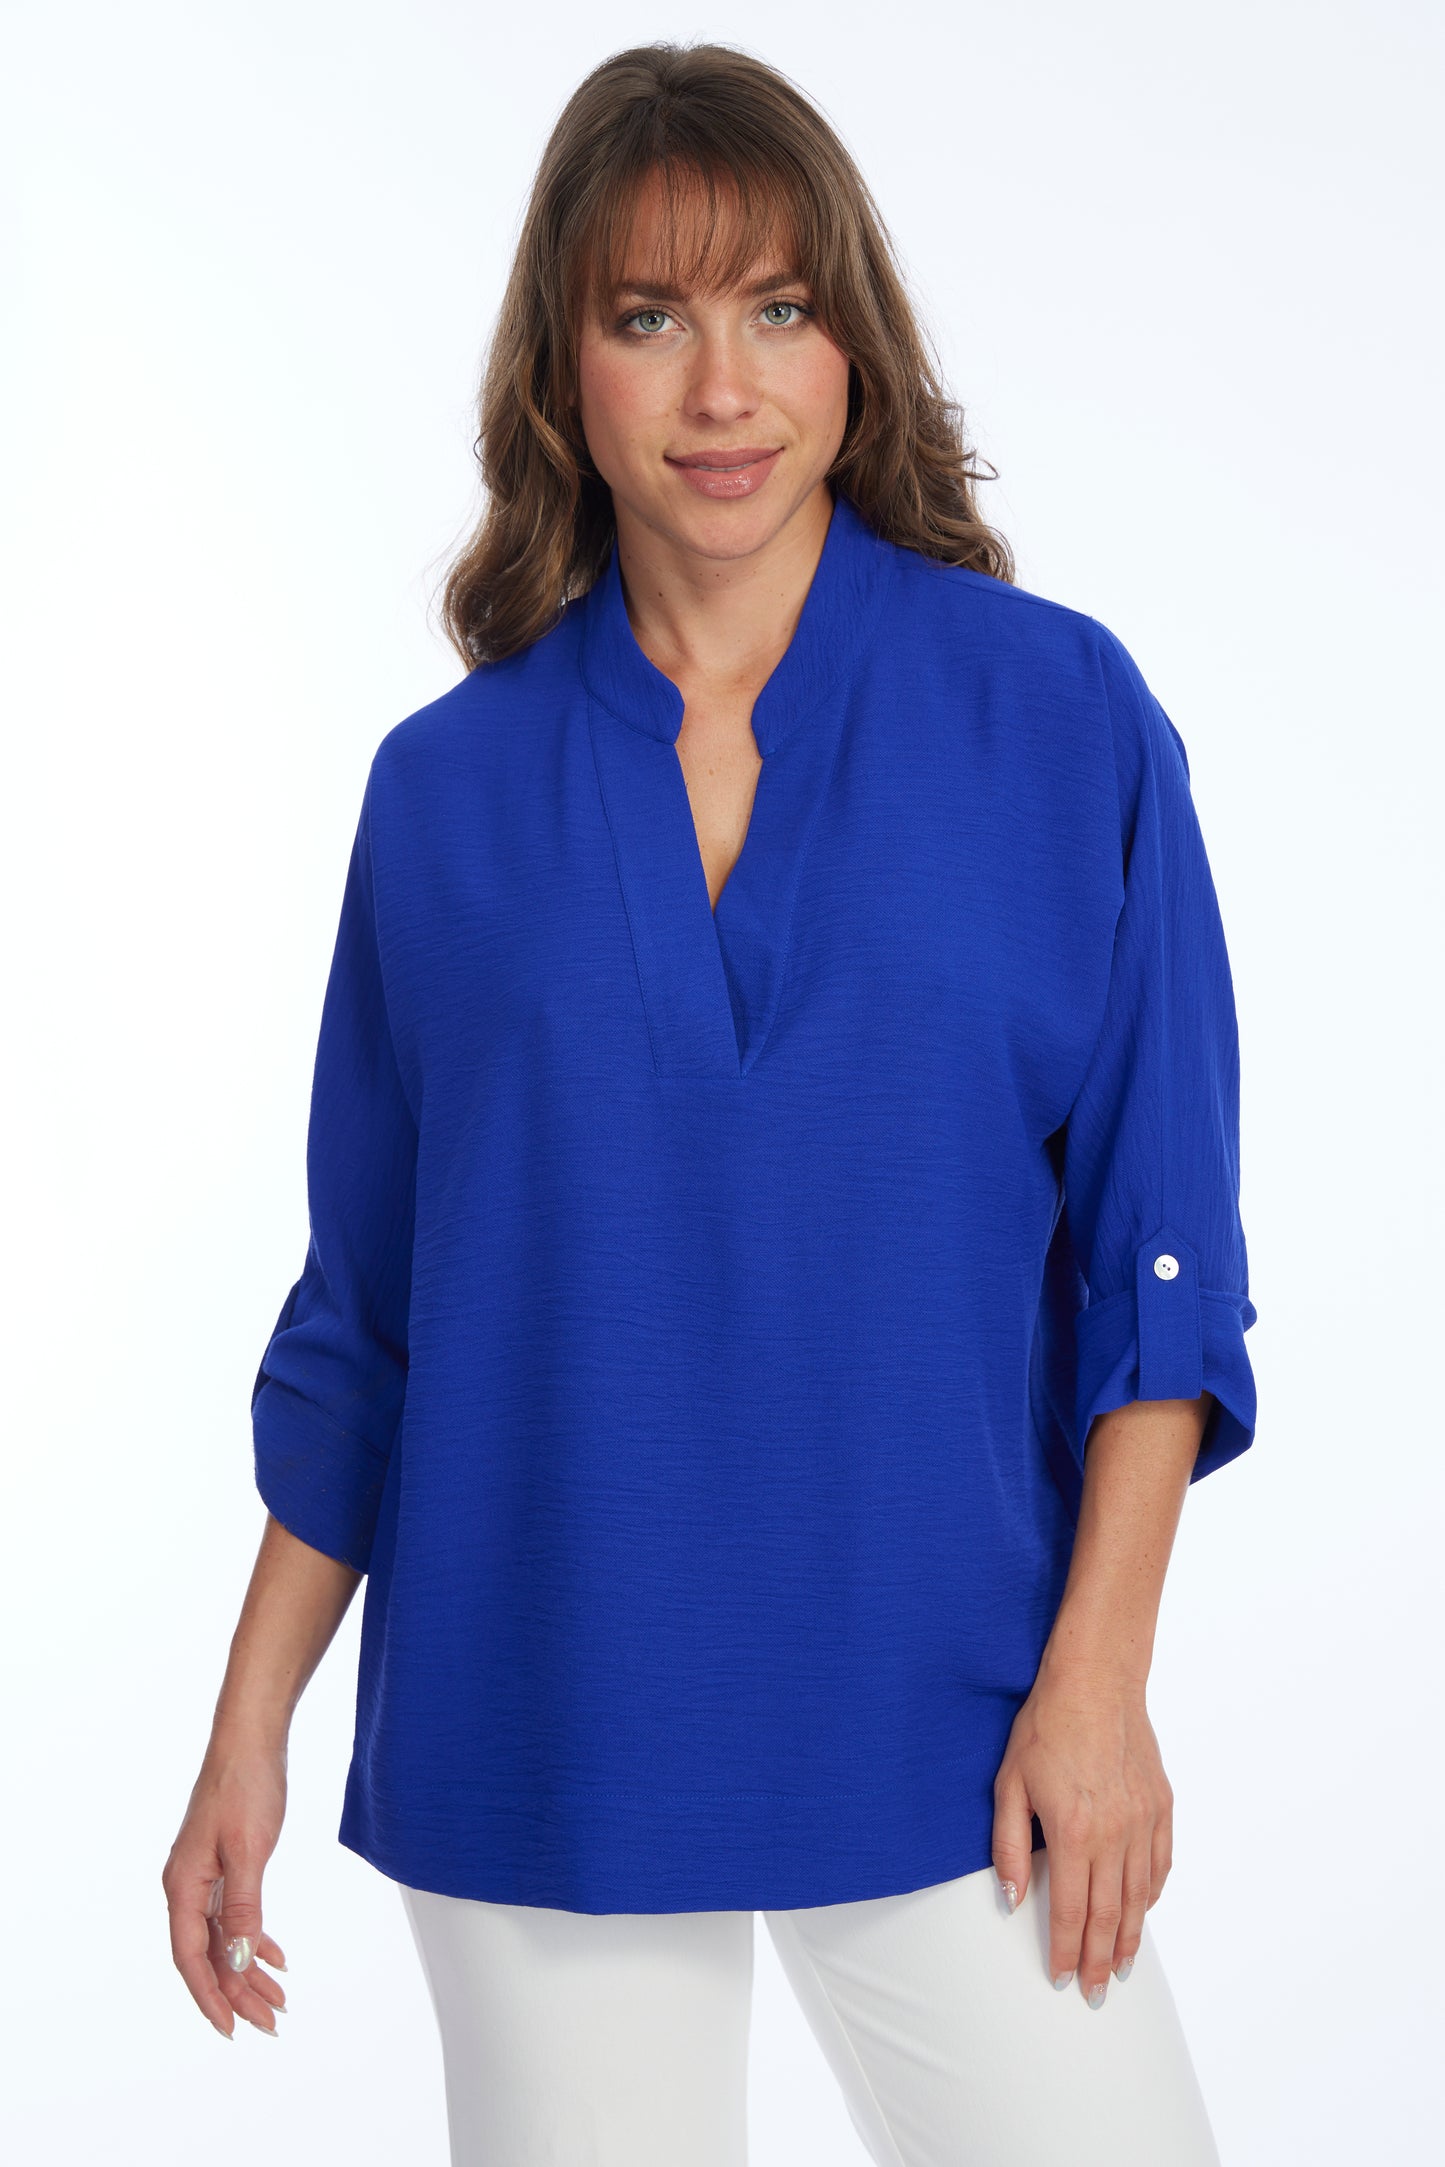 deep blue women's blouse top